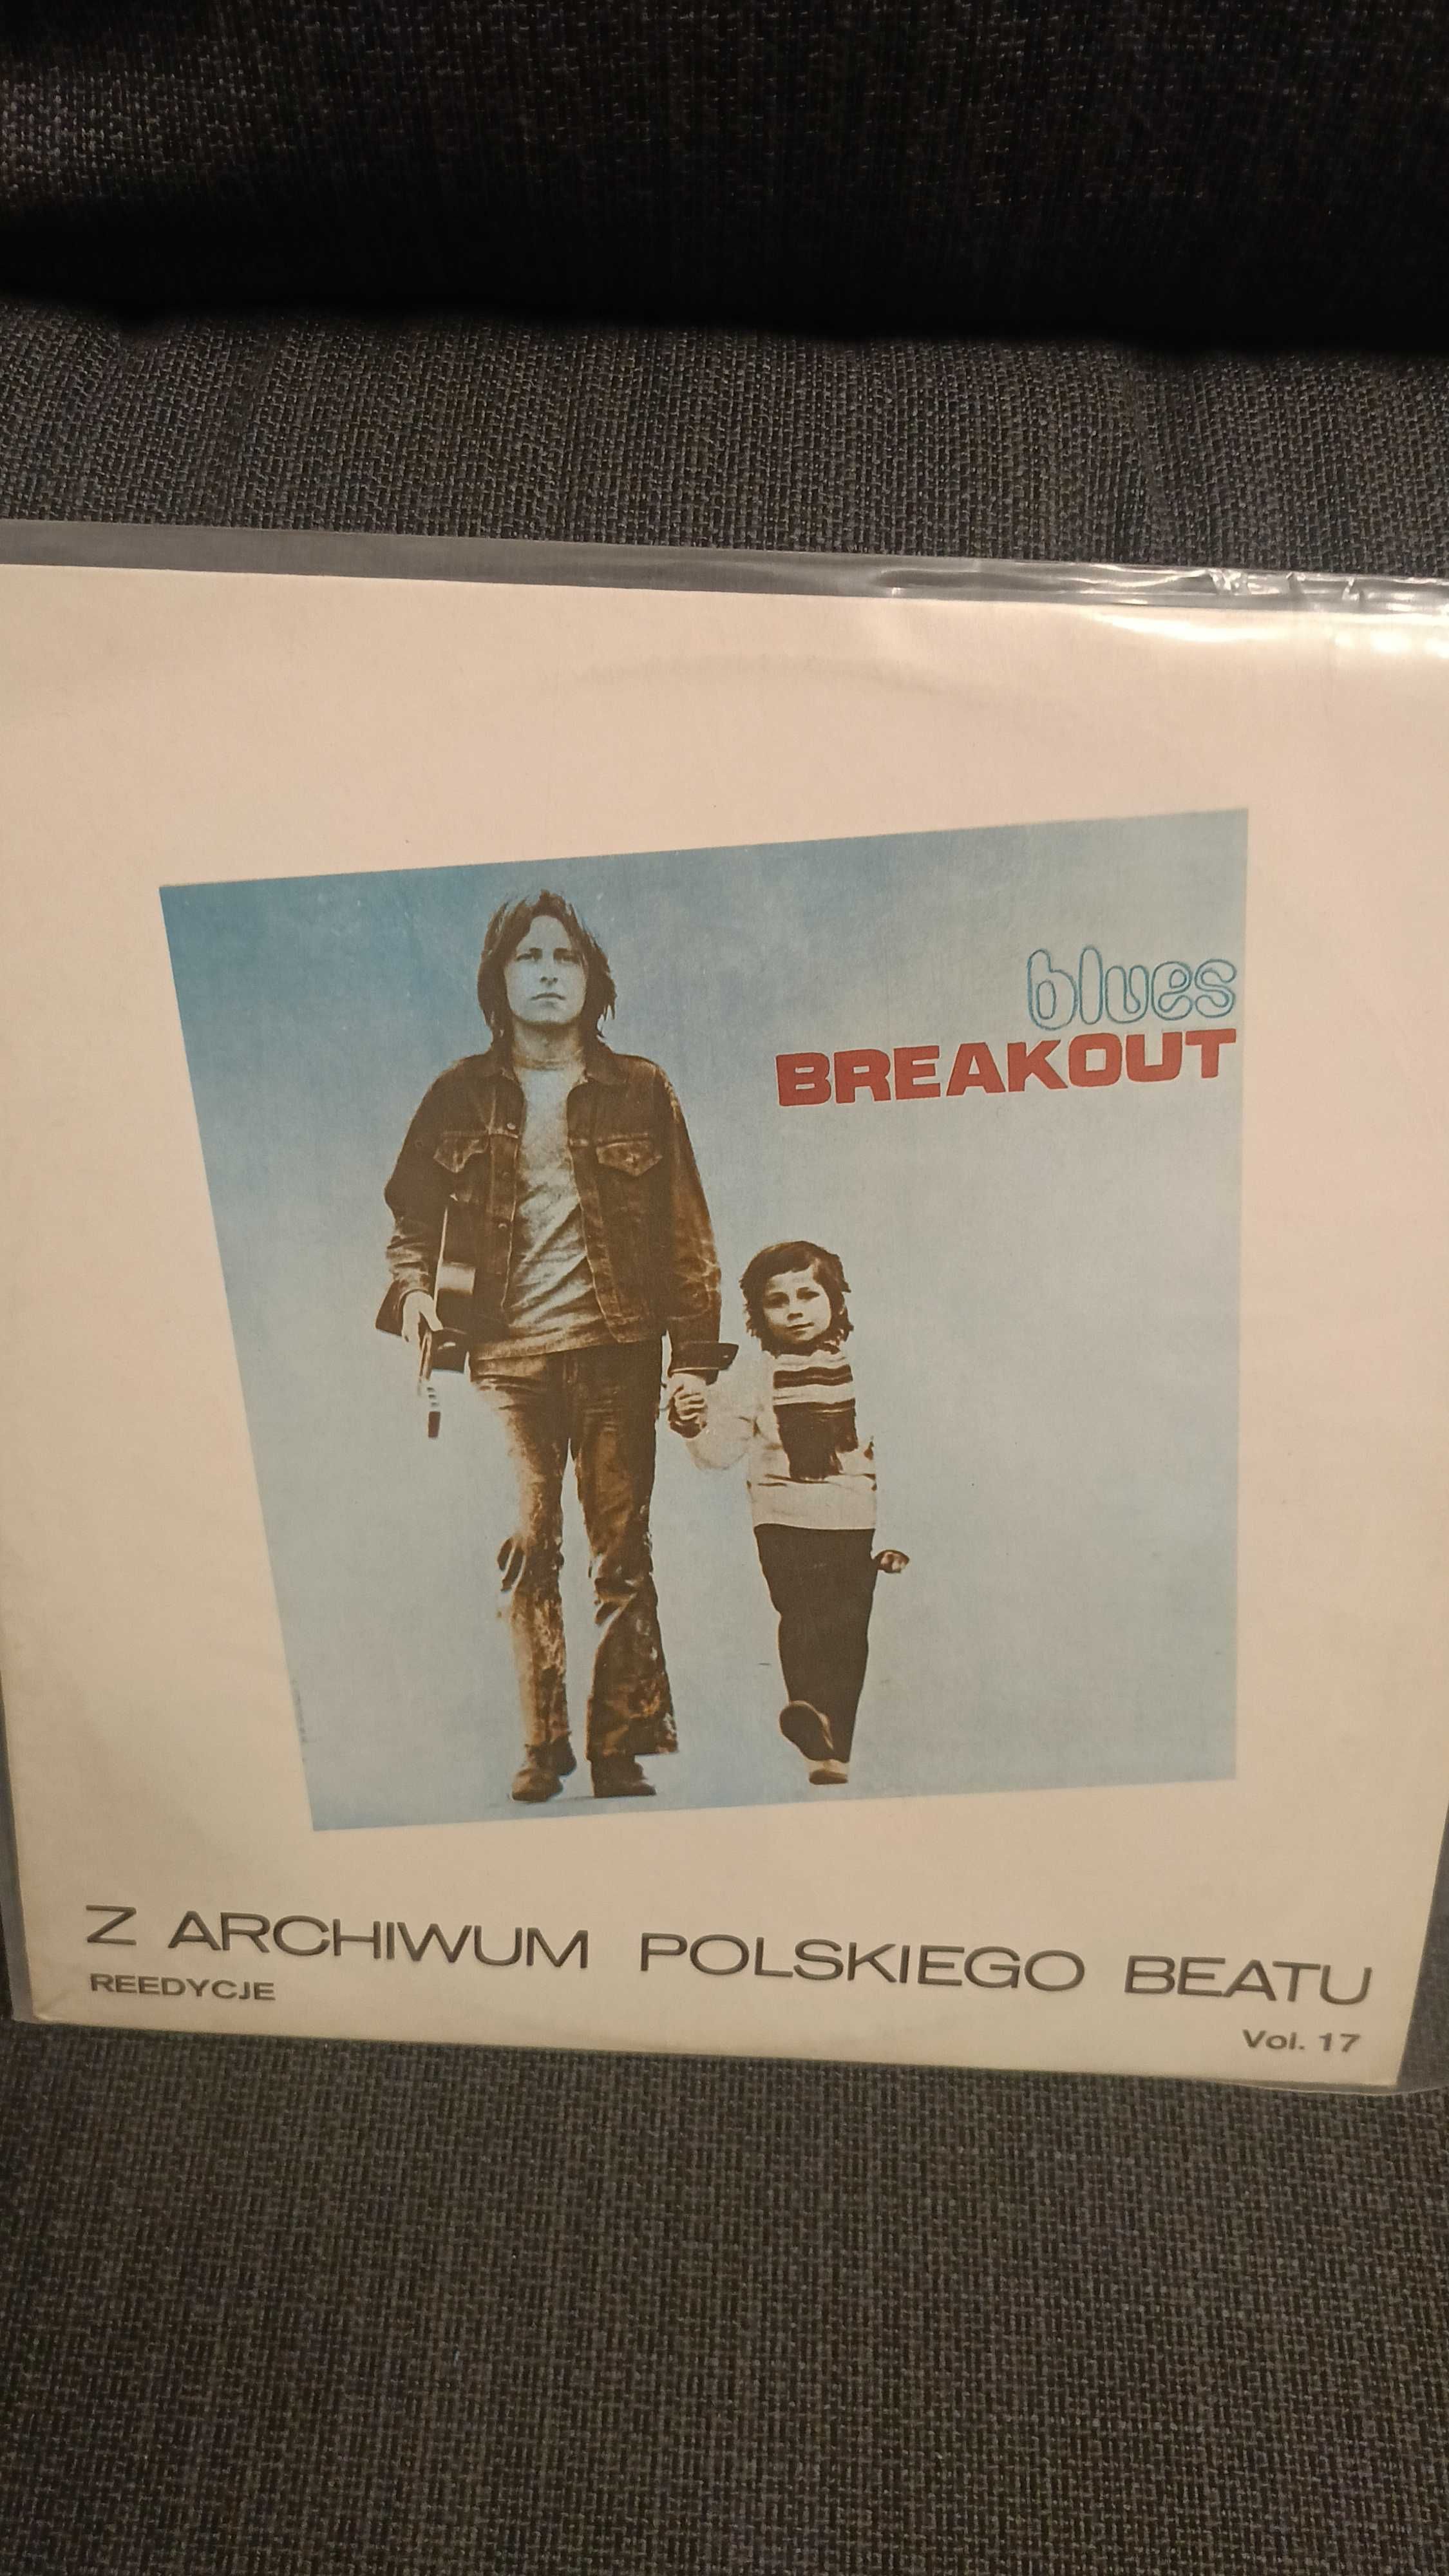 Breakout Z archiwum polskiego beatu winyl